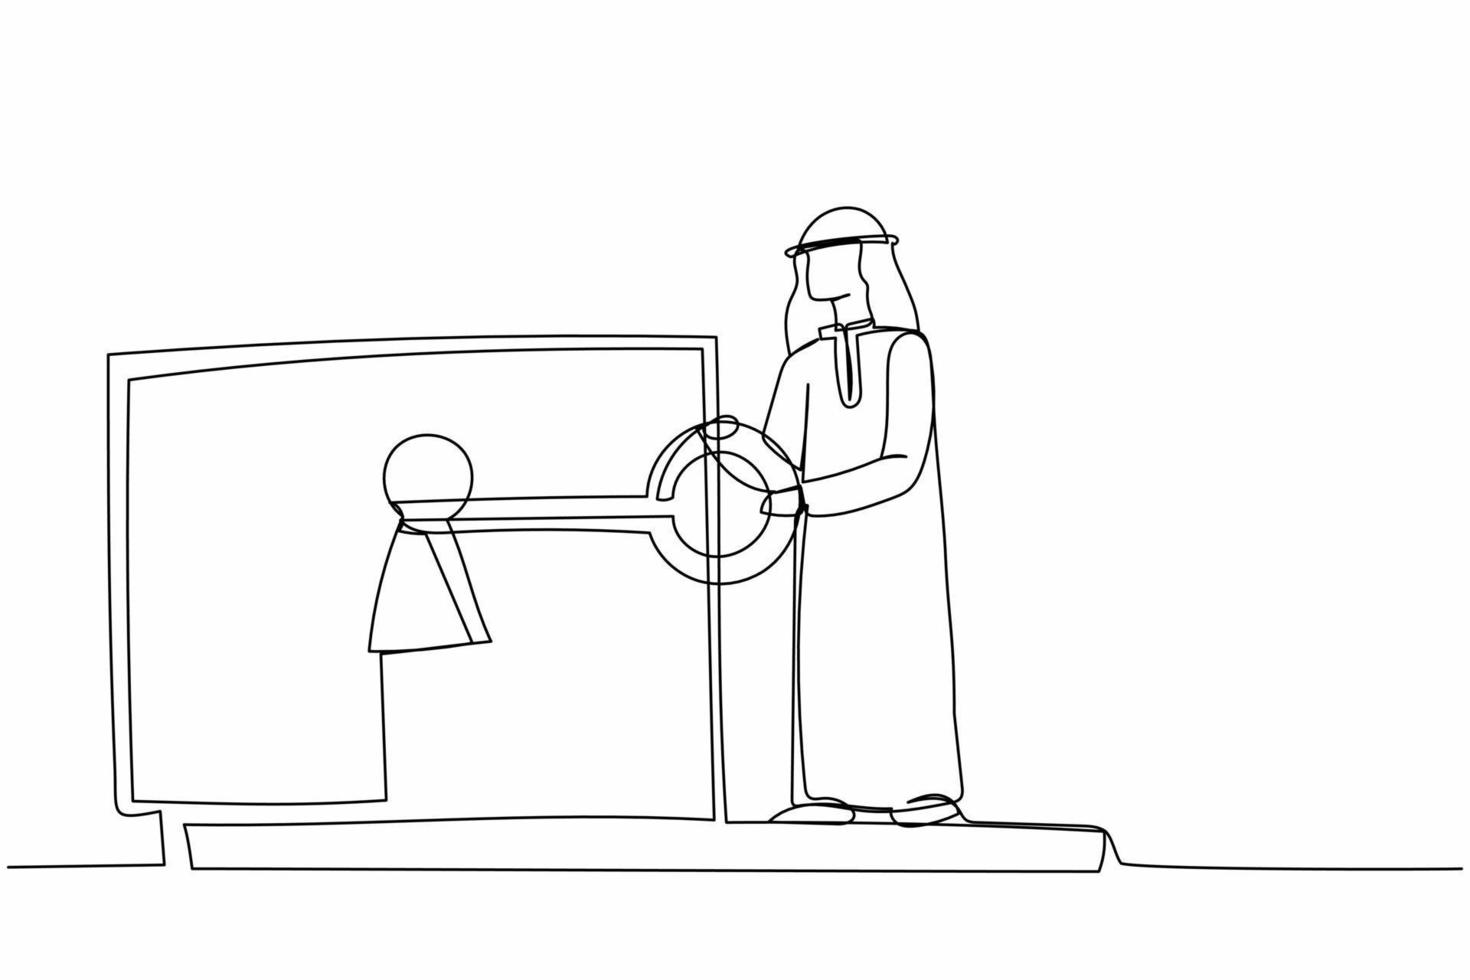 einzelne strichzeichnung arabischer geschäftsmann, der schlüssel in laptop steckt. Schutz und Sicherheit anmelden. Internetverschlüsselung, Zugriff auf verschlüsselte Daten. ununterbrochene Linie zeichnen grafische Vektorillustration des Designs vektor